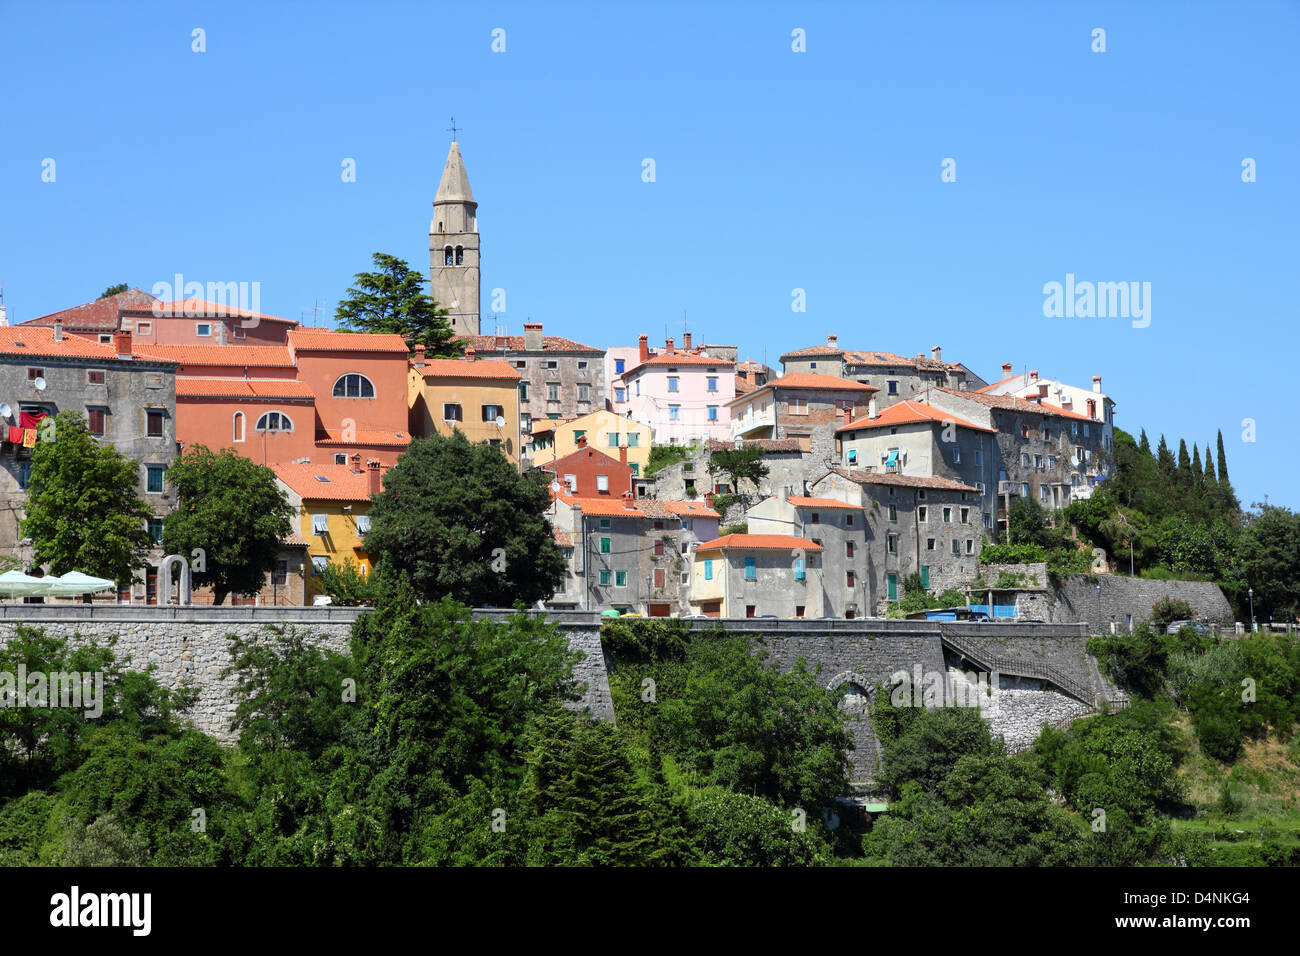 Croatia - Labin on Istria peninsula. Typical Croatian old town. Stock Photo